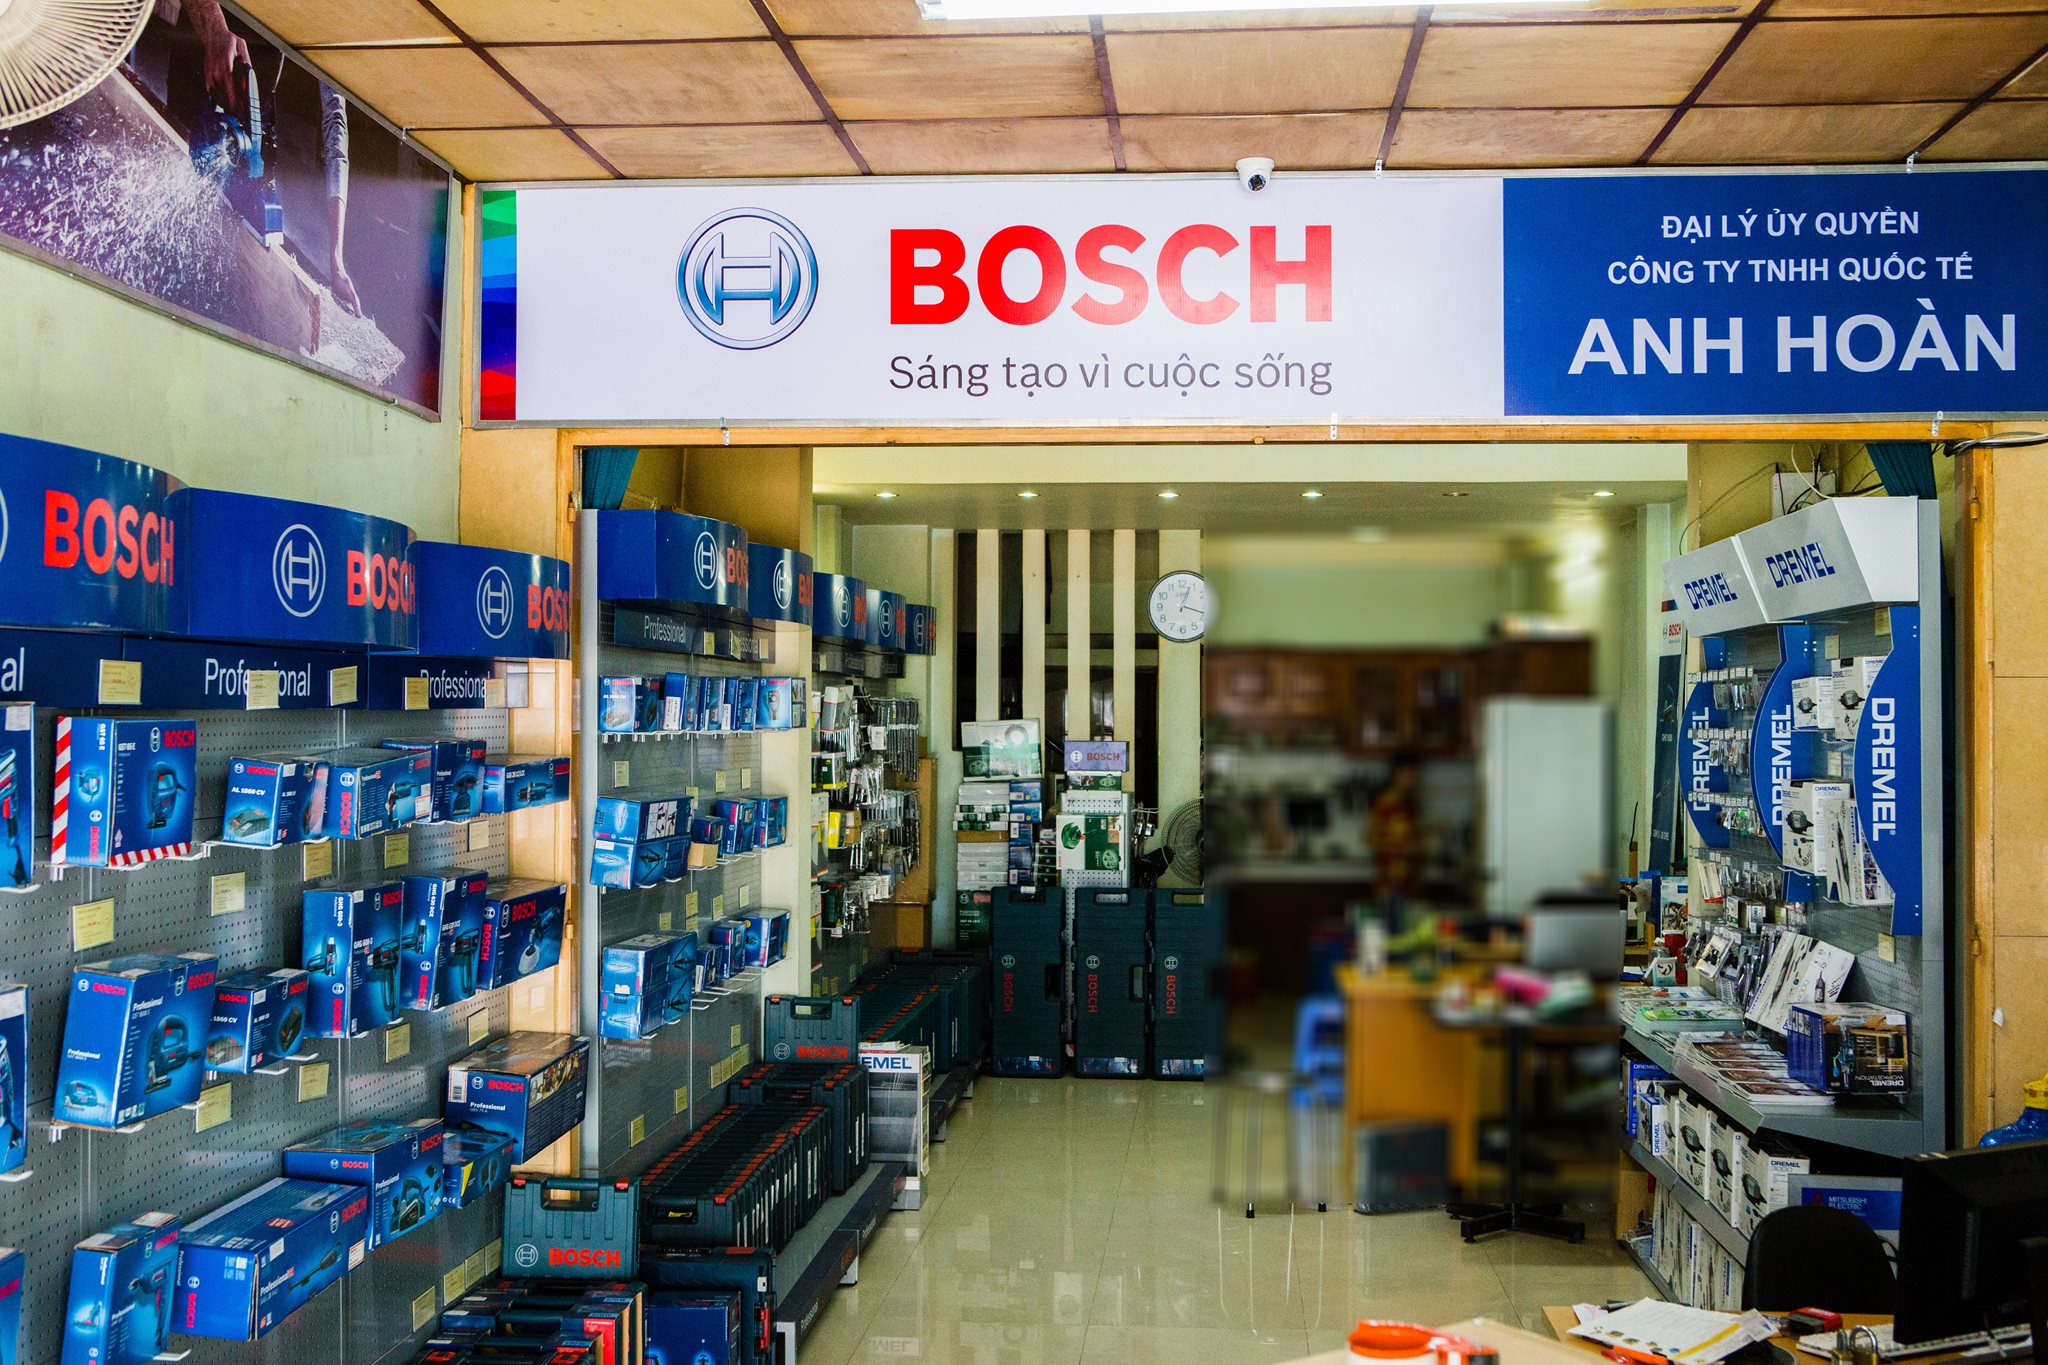 Đại lý Bosch chính hãng tại khu vực Quận 5